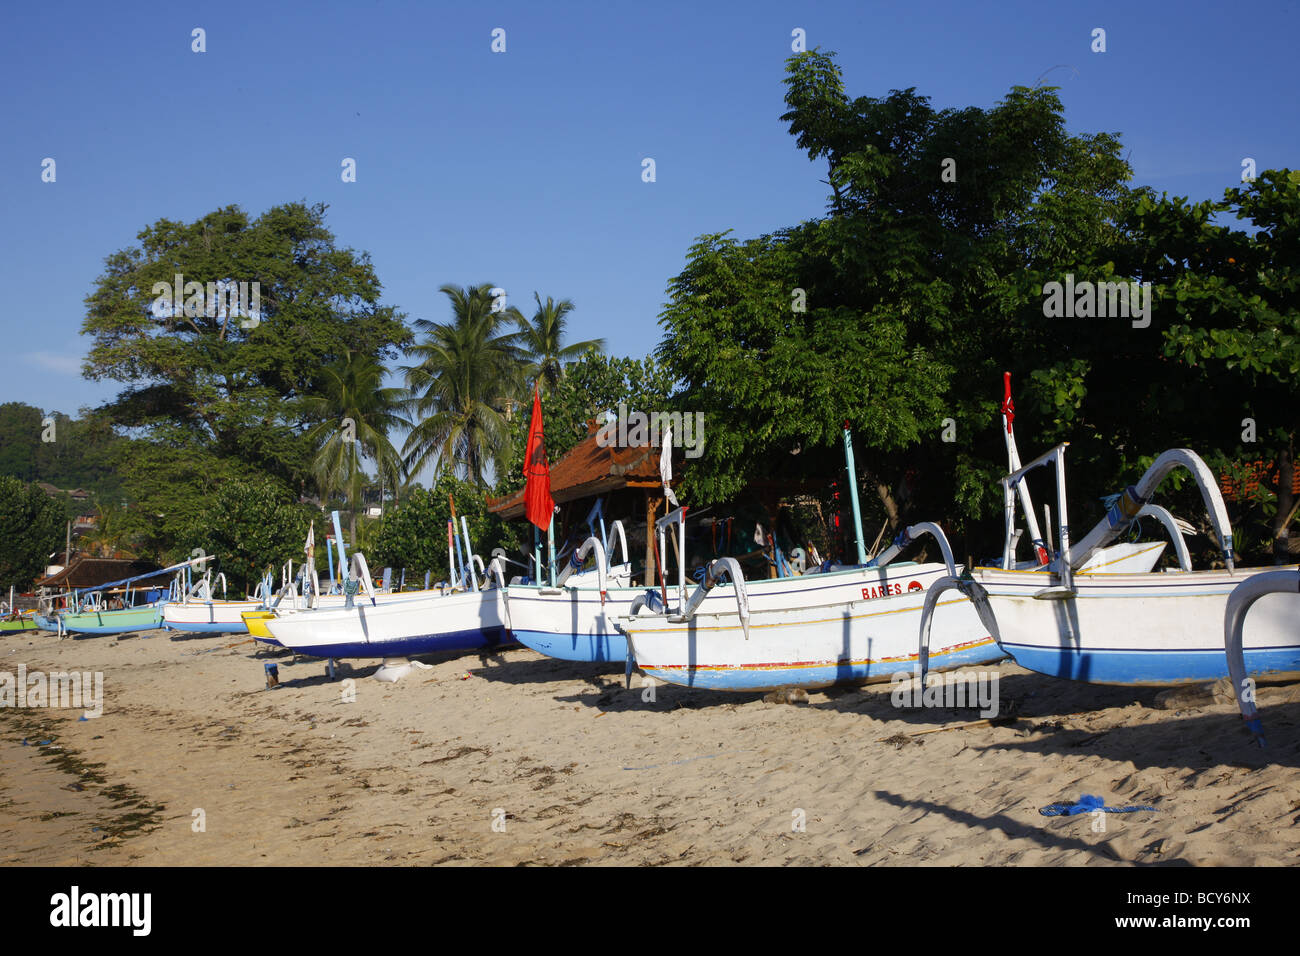 Outrigger bateaux, Bali, Padangbai, République d'Indonésie, Asie du sud-est Banque D'Images